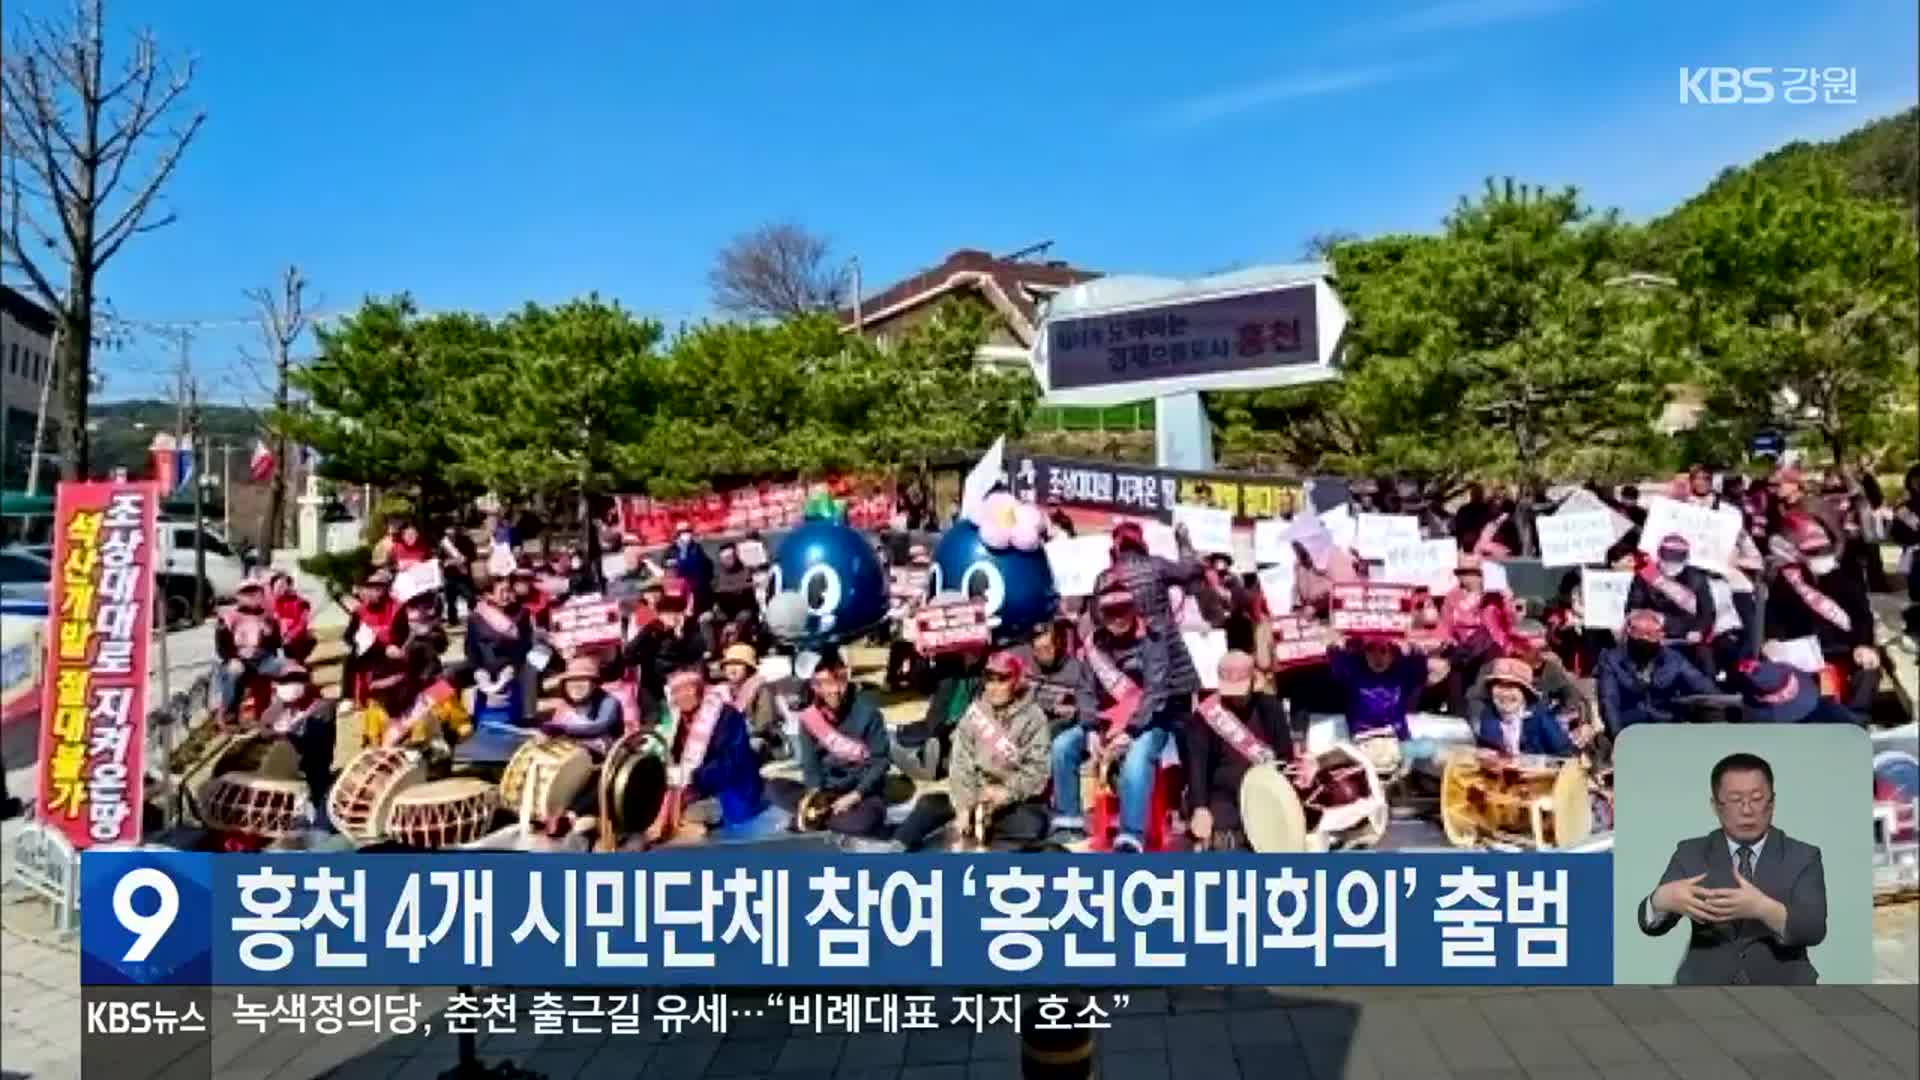 홍천 4개 시민단체 참여 ‘홍천연대회의’ 출범